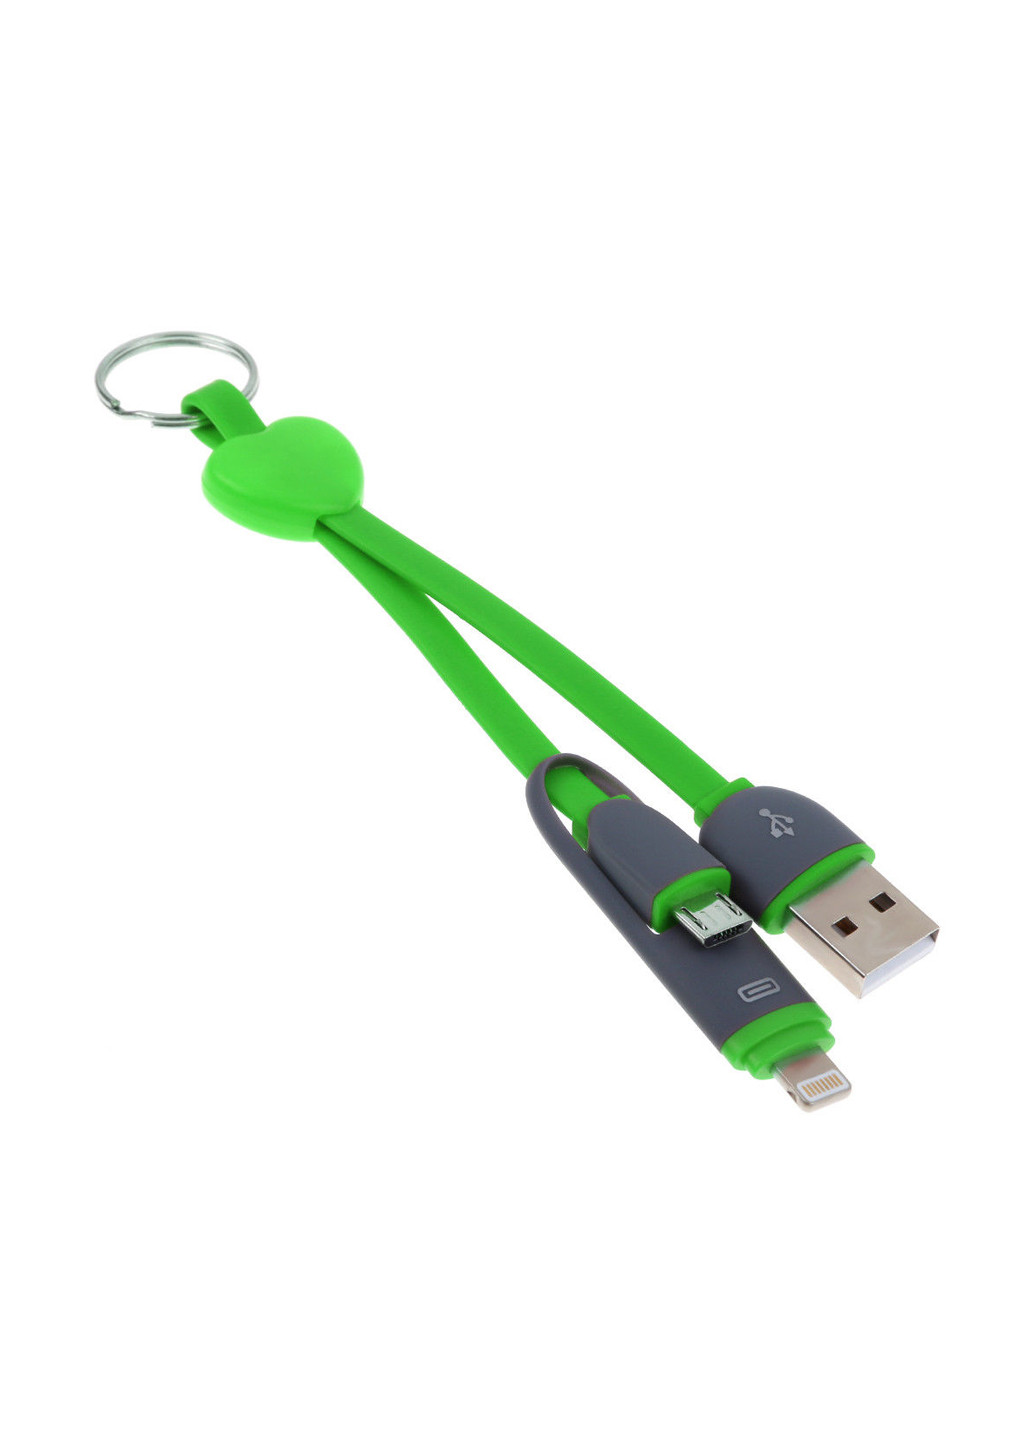 Кабель-брелок USB key Green, 2 в 1 - Lightning, Micro USB, 25 см XoKo sc-201 (132572862)